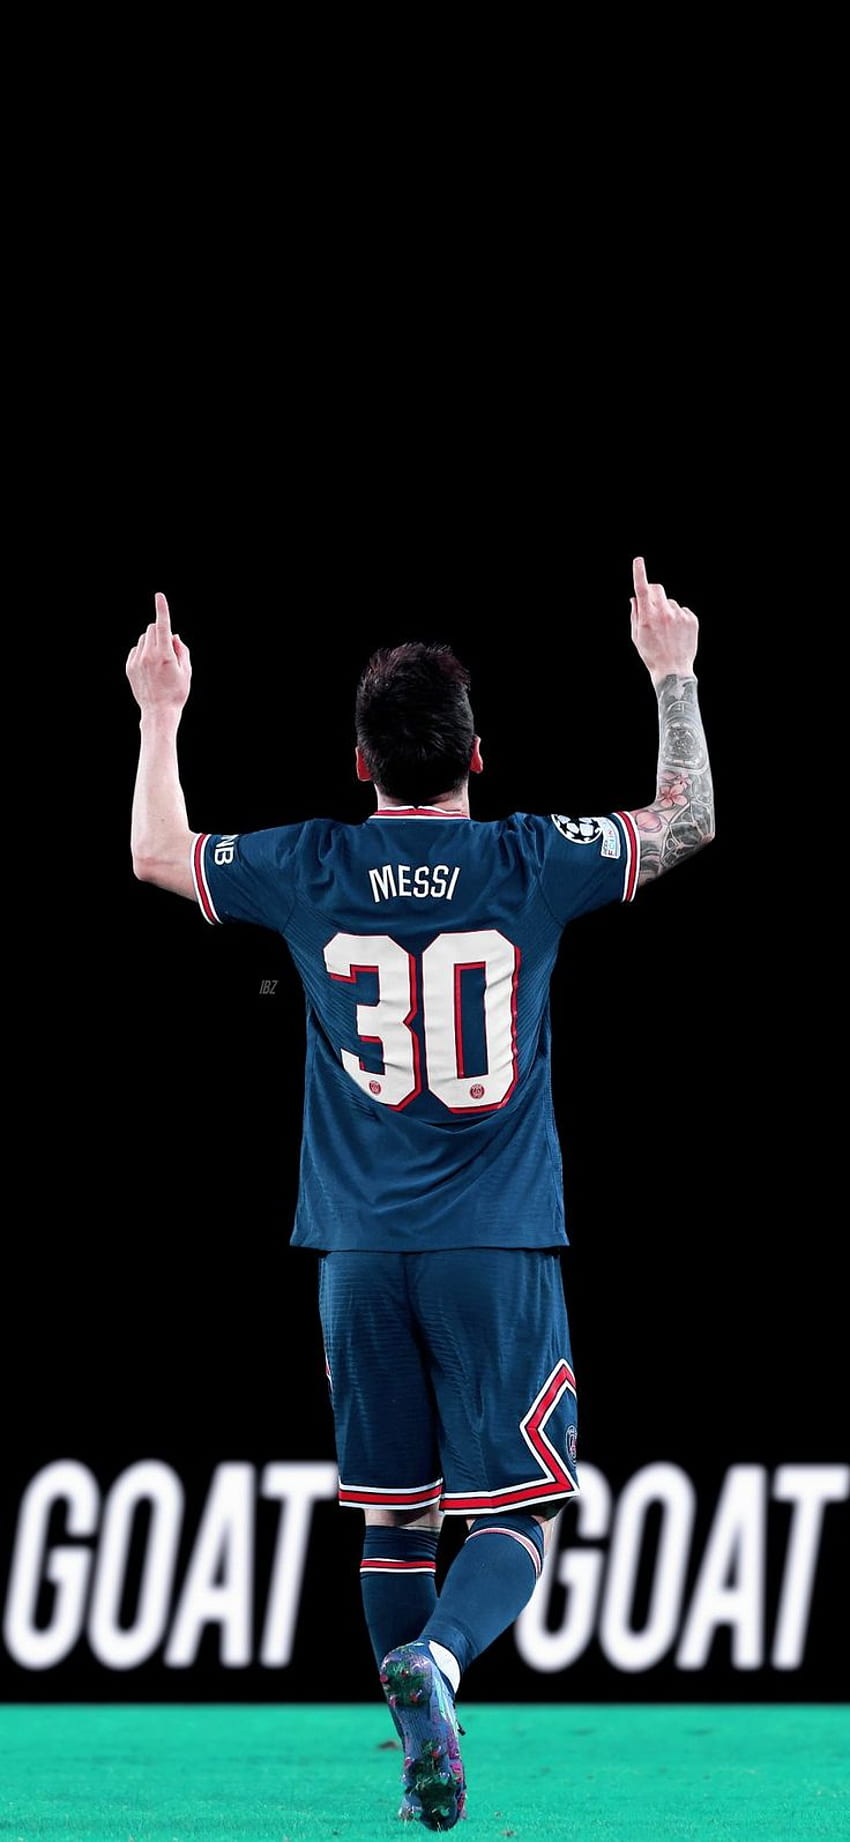 بزبلو. on Twitter in 2022. Lionel messi, Messi soccer, Lionel messi , Messi 2022 HD phone wallpaper